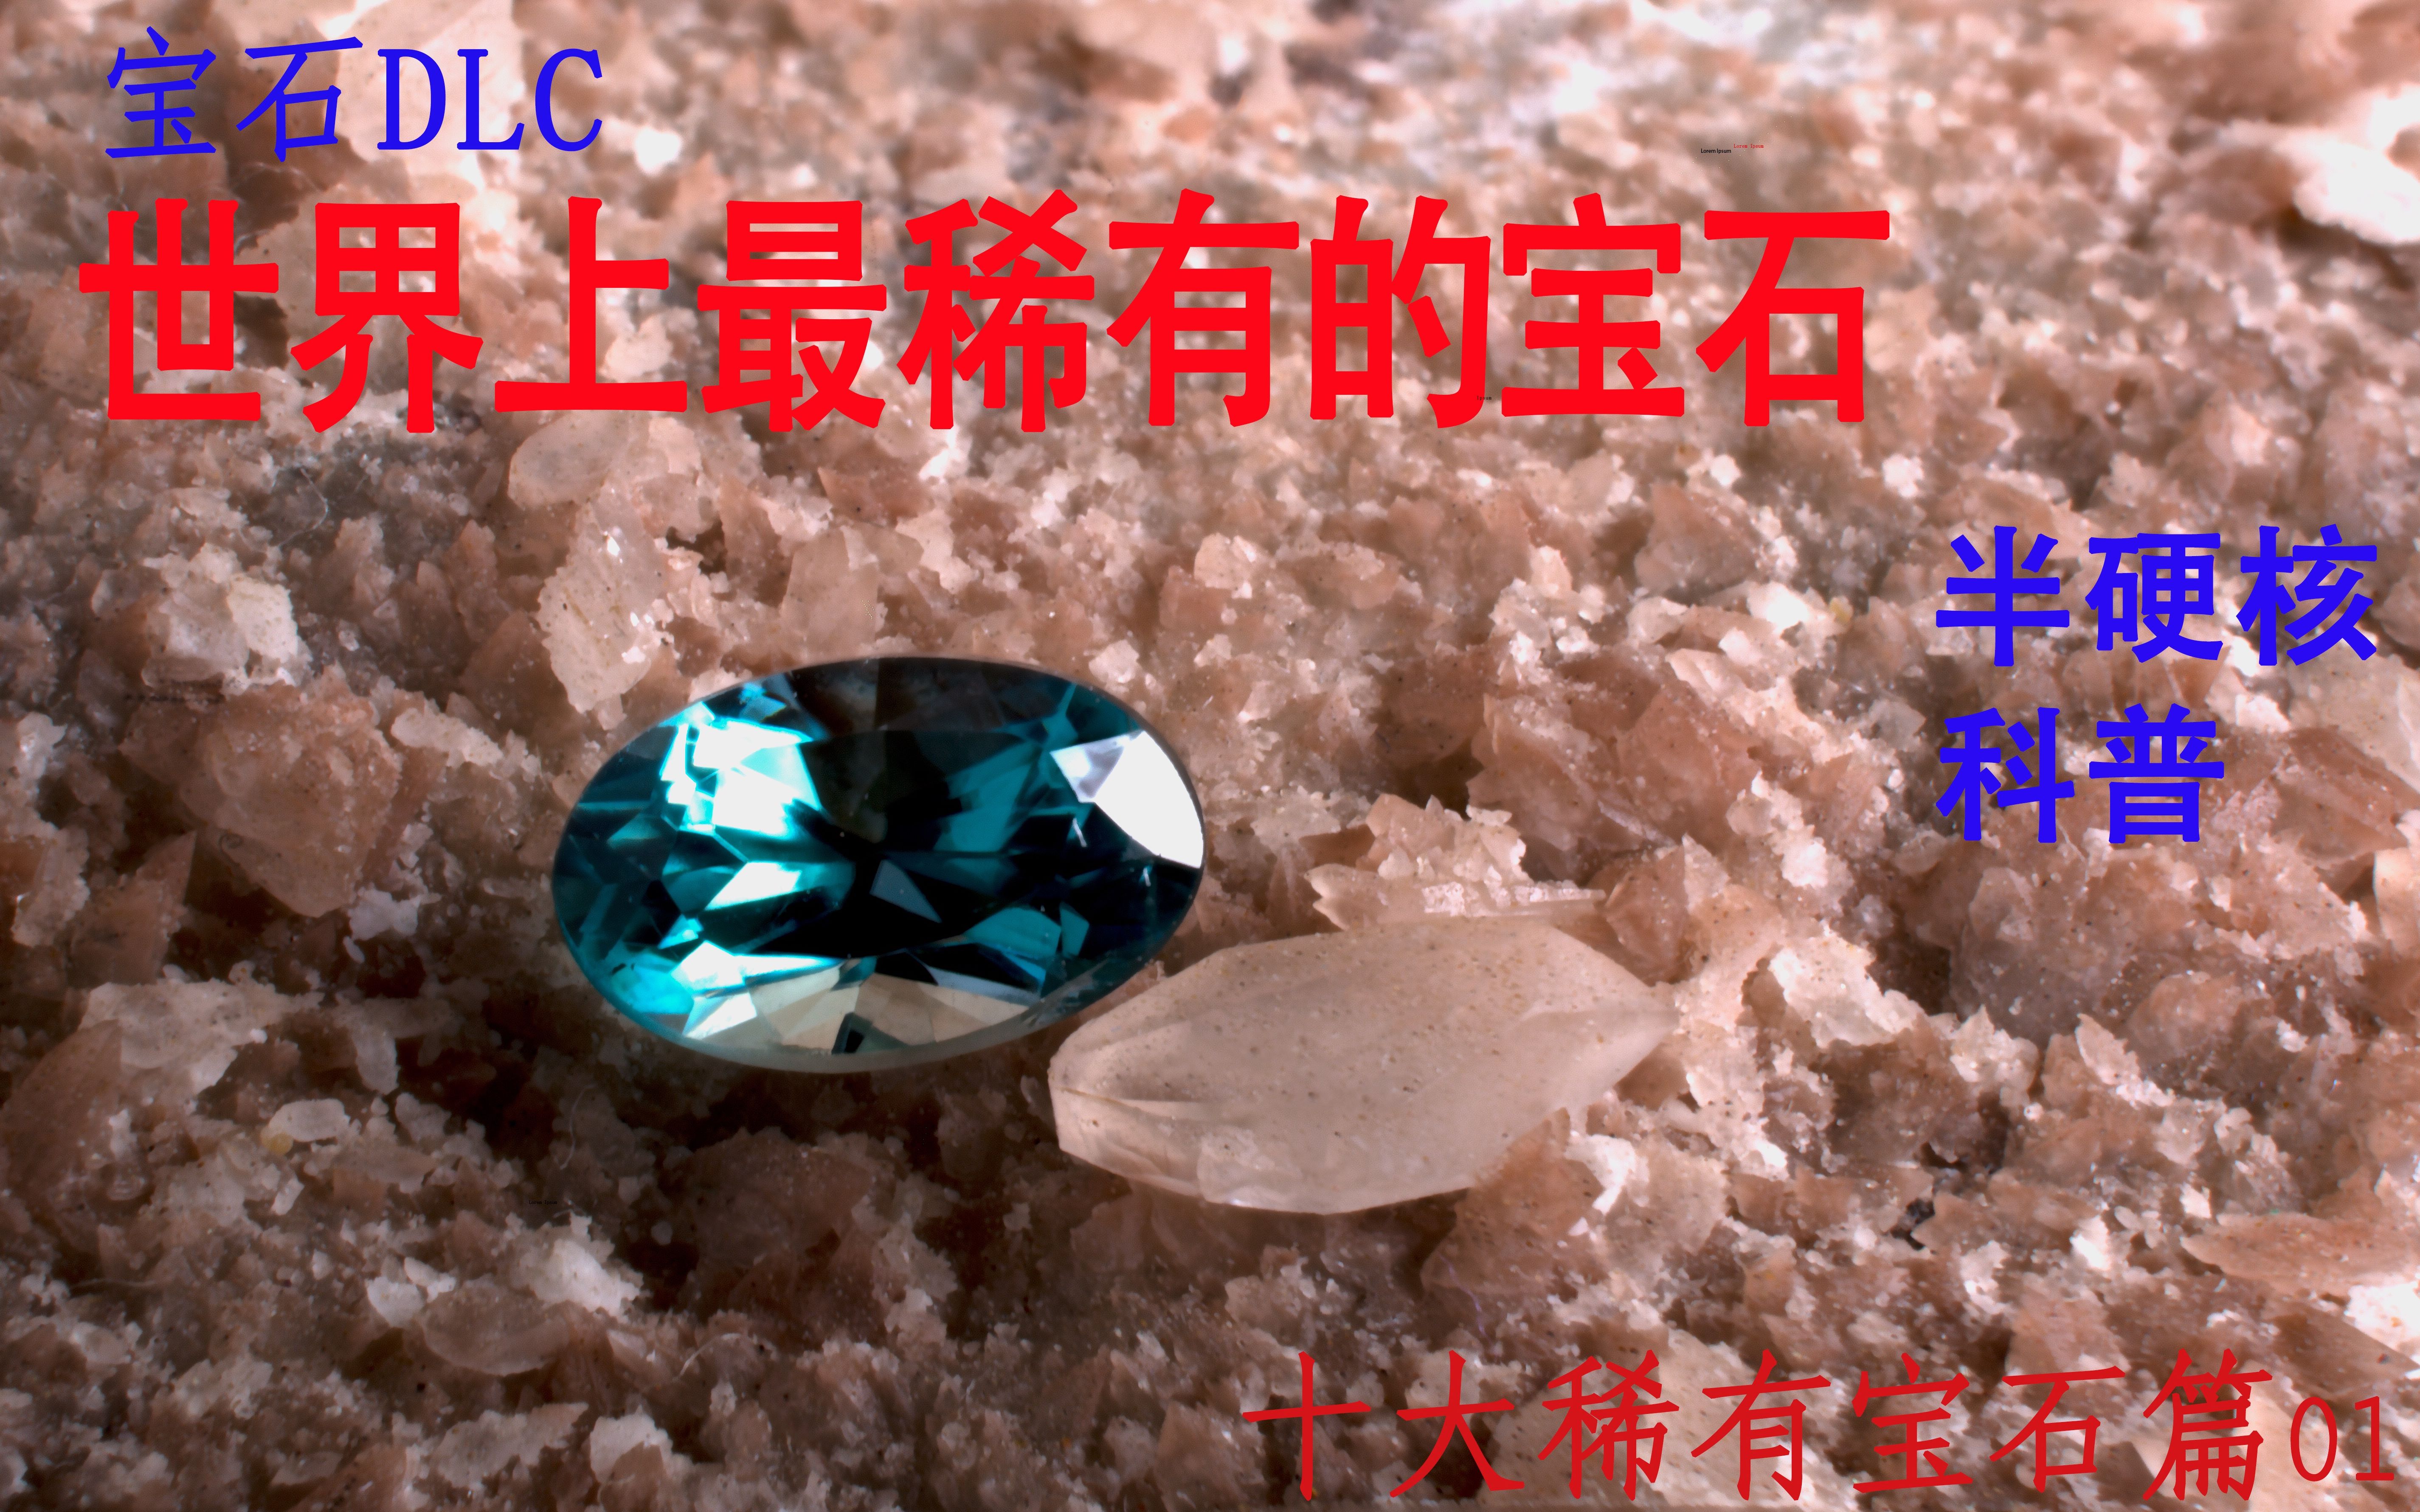 世界第二稀有硅硼镁铝石科普宝石dlc世界十大稀有宝石篇01